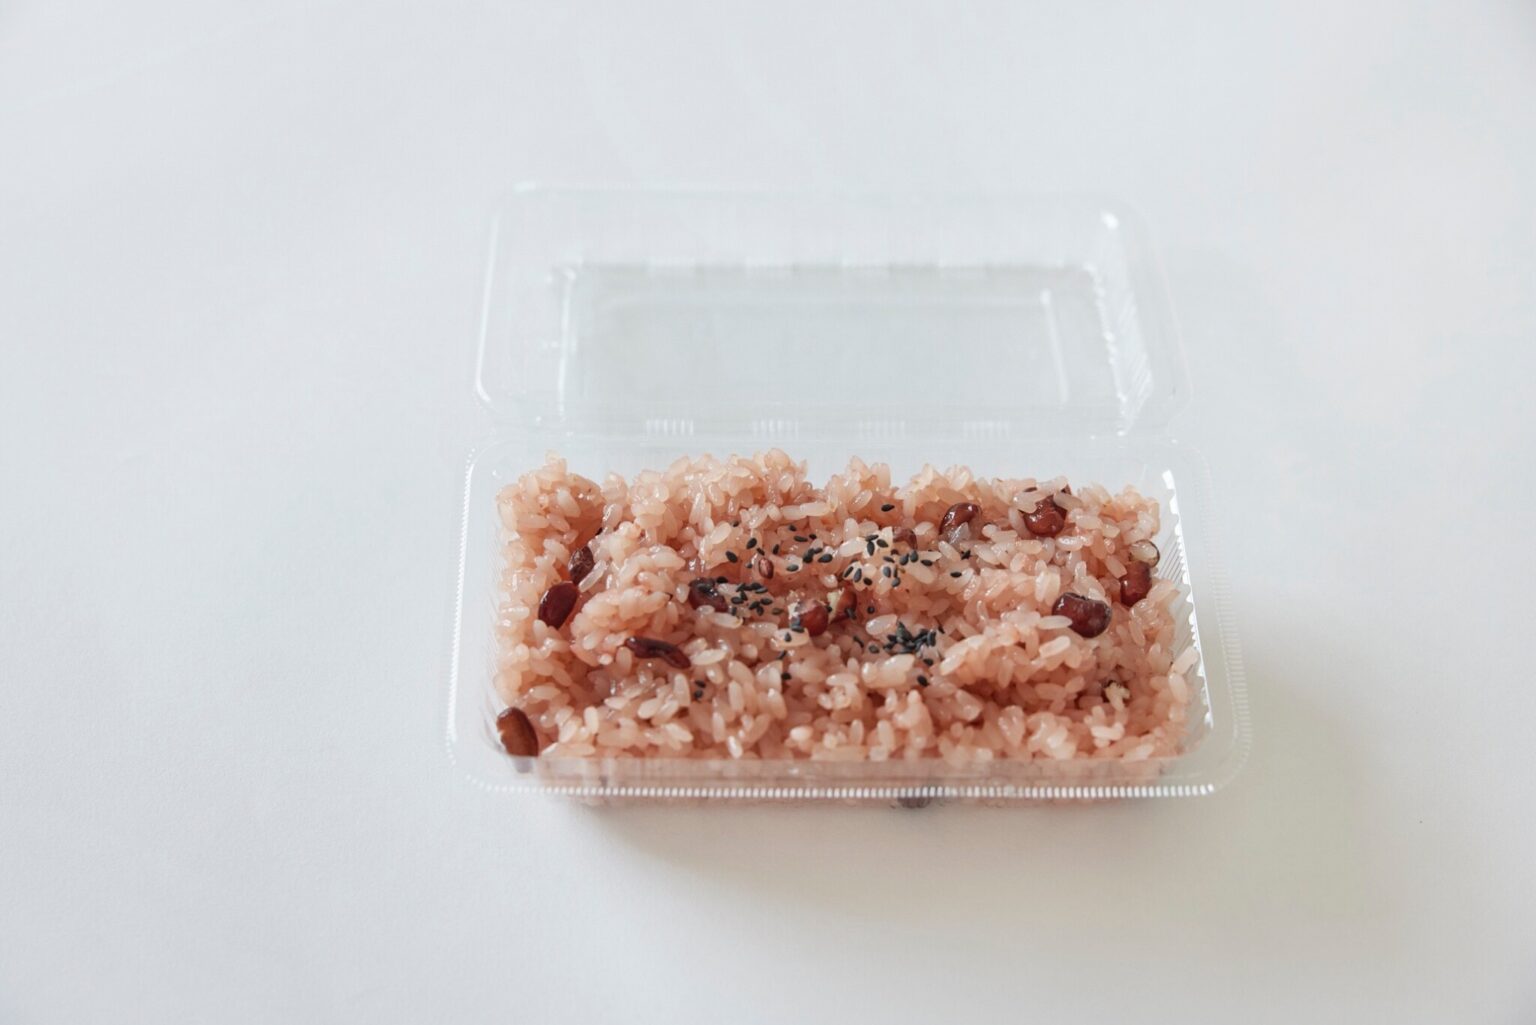 通常、お赤飯は小豆で炊かれることもあるが、皮が破れやすいことから切腹を連想させるため、関東では縁起をかついでささげが用いられる。1パック450円。